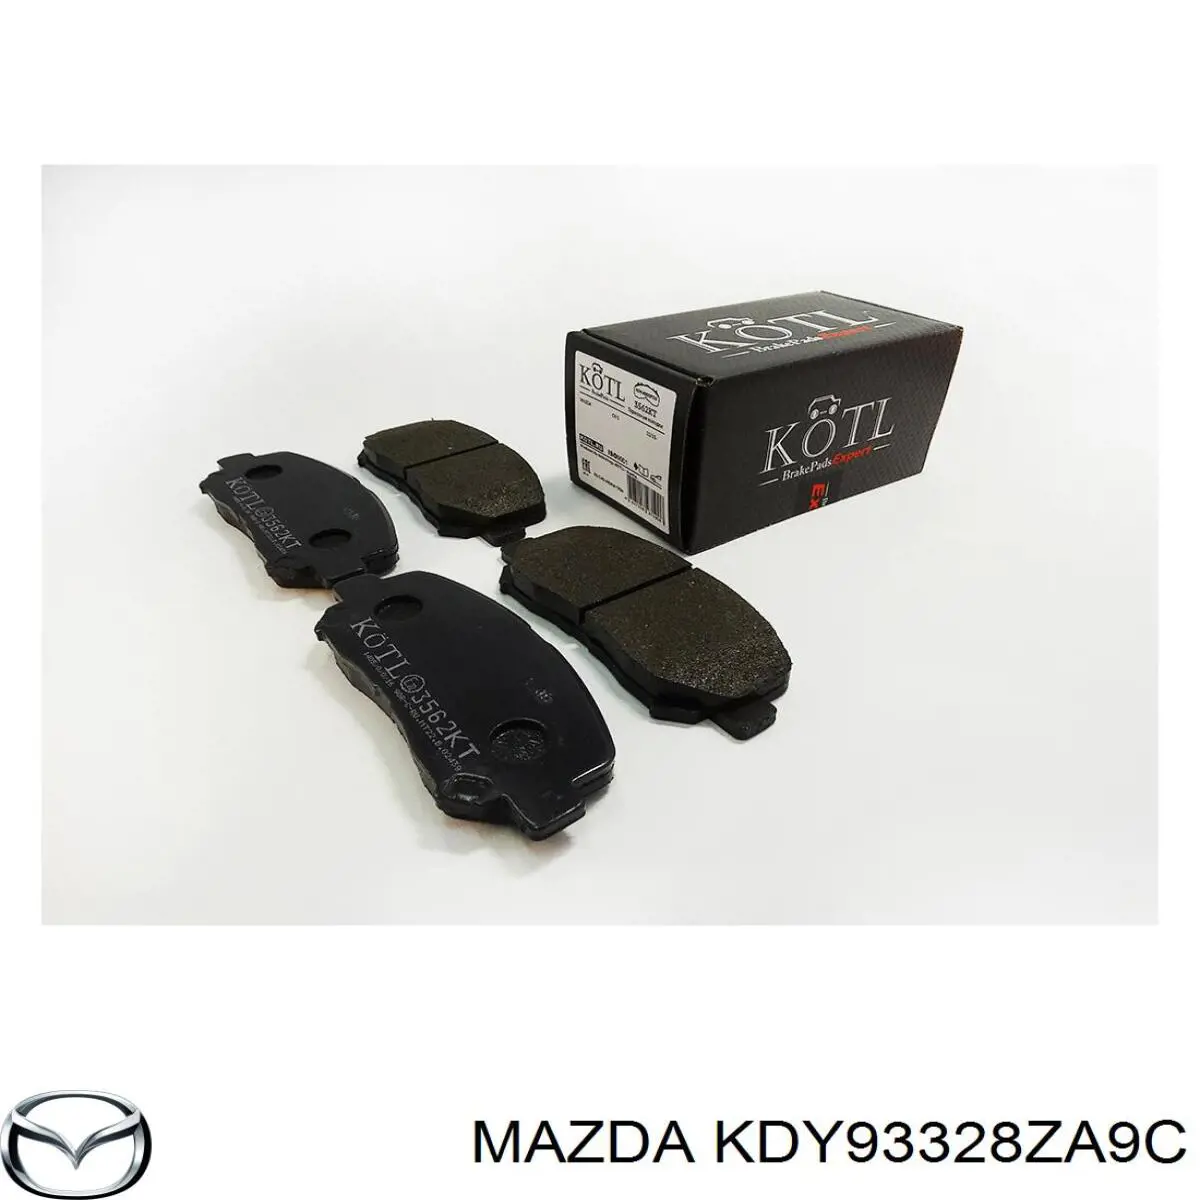 KDY93328ZA9C Mazda pastillas de freno delanteras